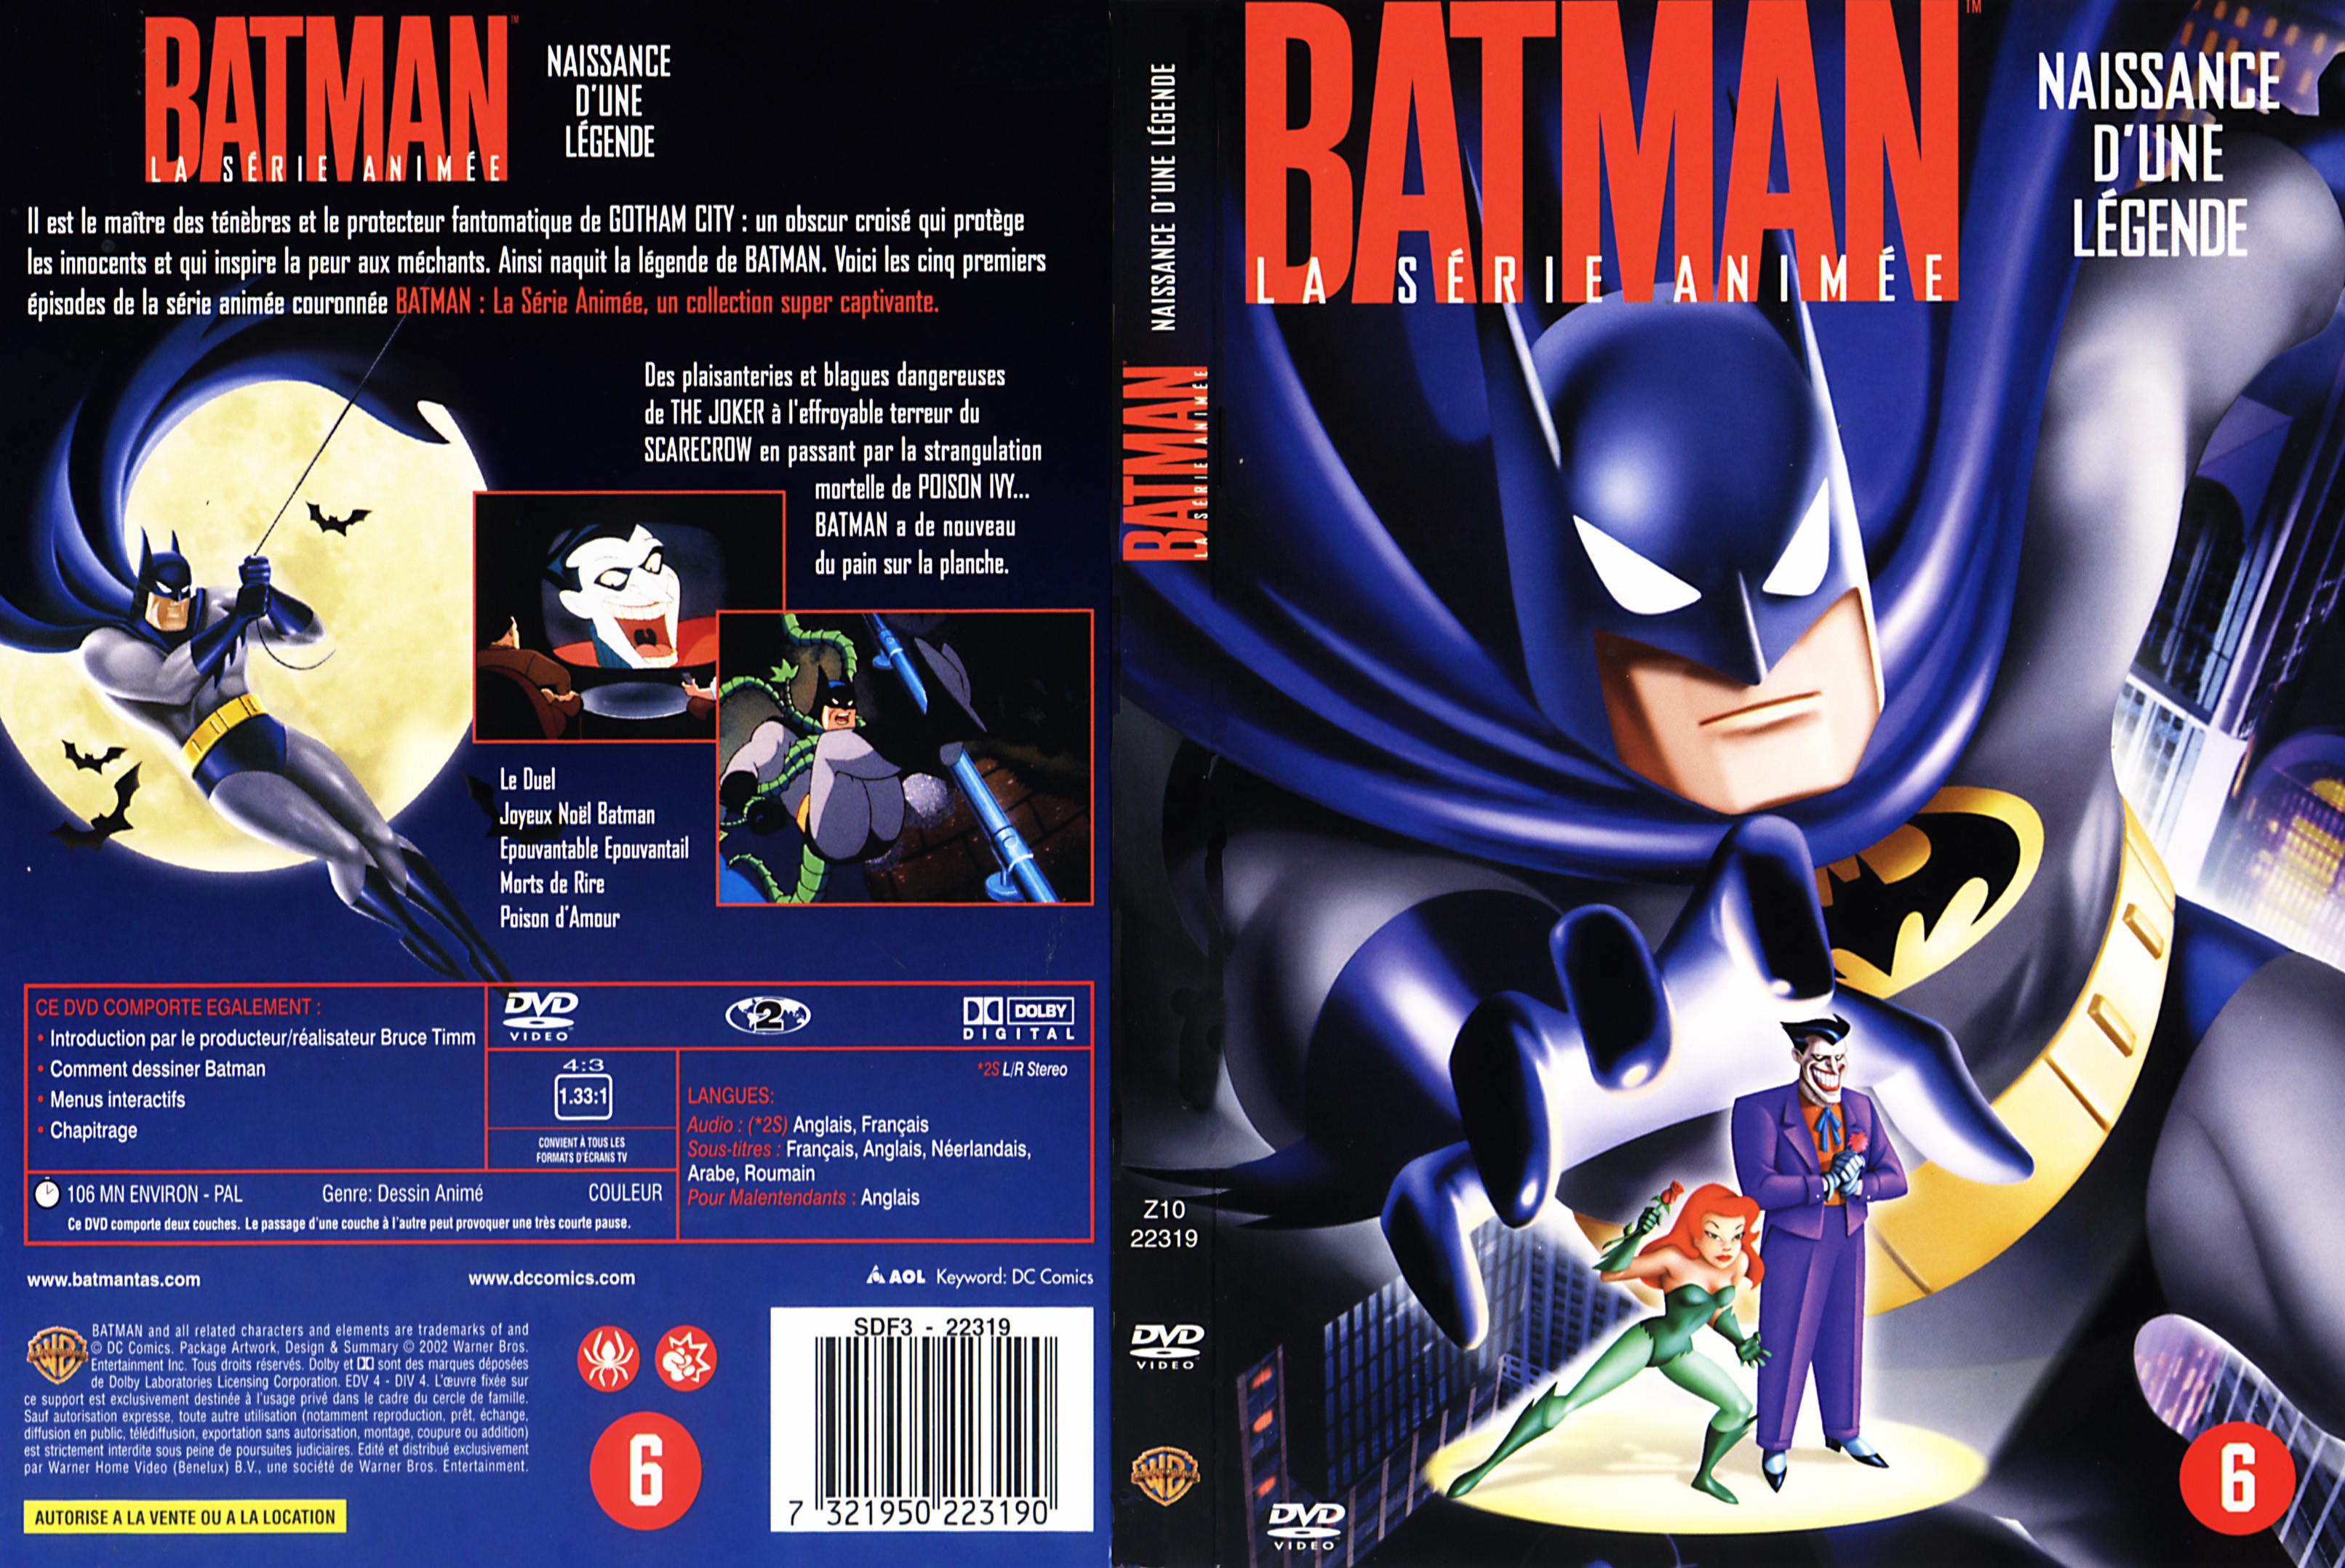 Jaquette DVD Batman naissance d